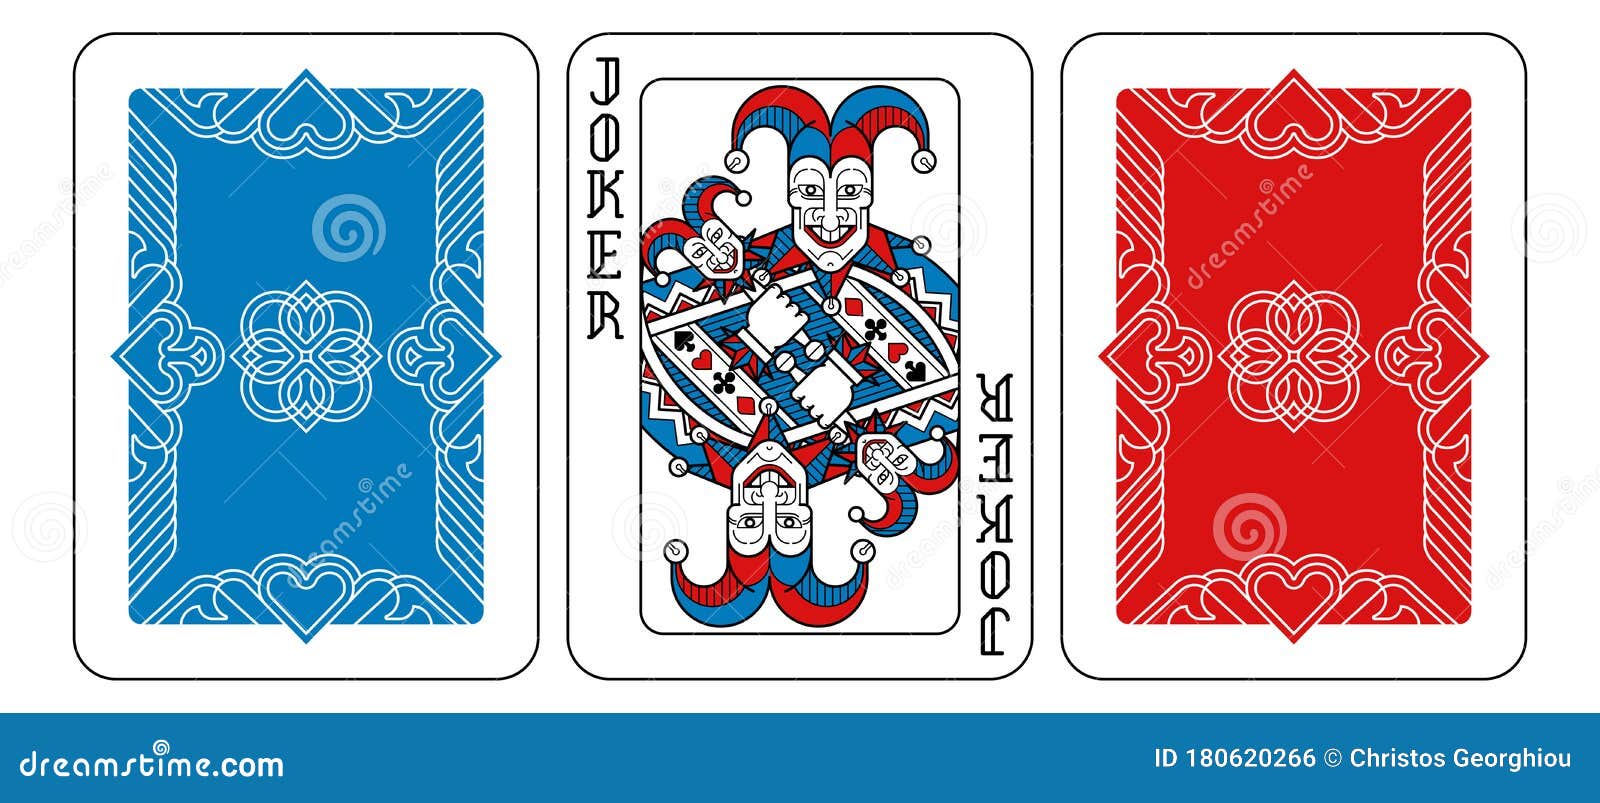 Jogo das cartas azul e vermelho online